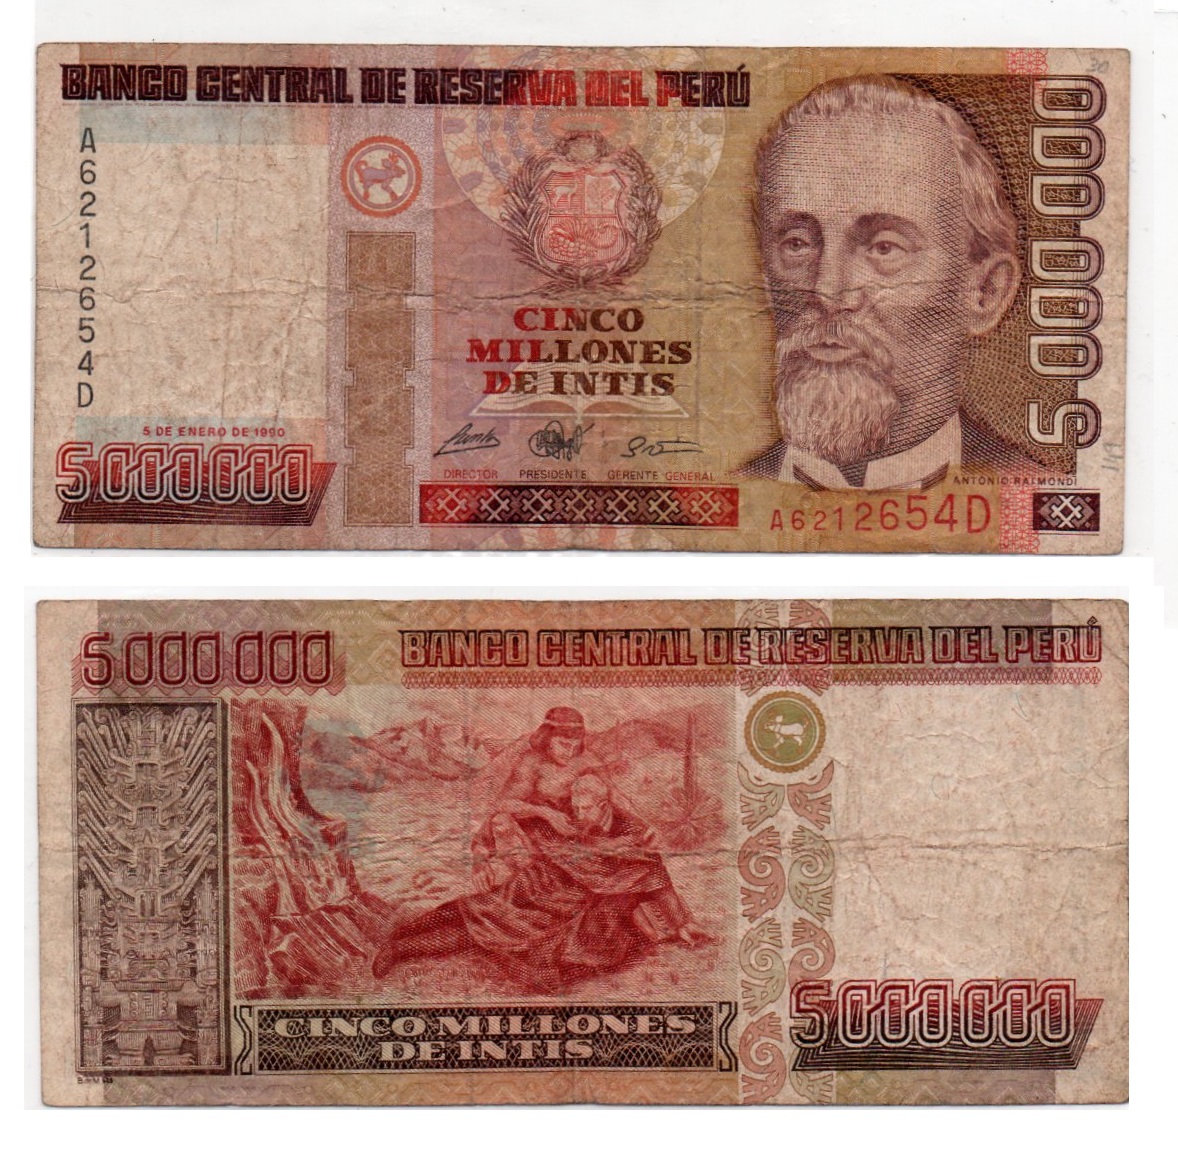 Peru #149/VG 5.000.000 Intis